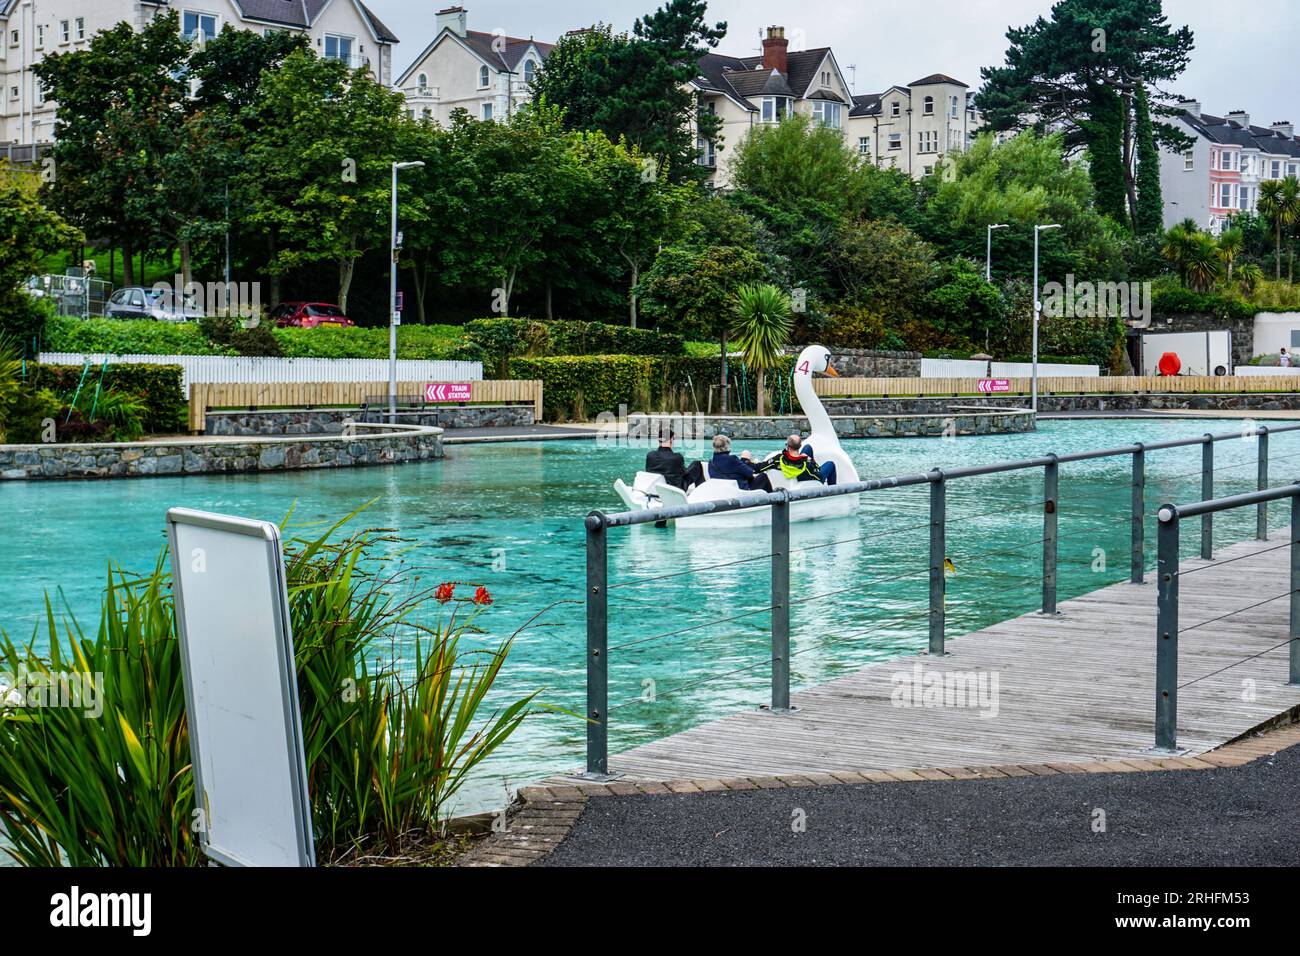 Les adultes apprécient les sports nautiques alors qu'ils naviguent le long d'un bateau cygne dans le Pickle Fun Park à Bangor, County Down, Irlande du Nord. Banque D'Images